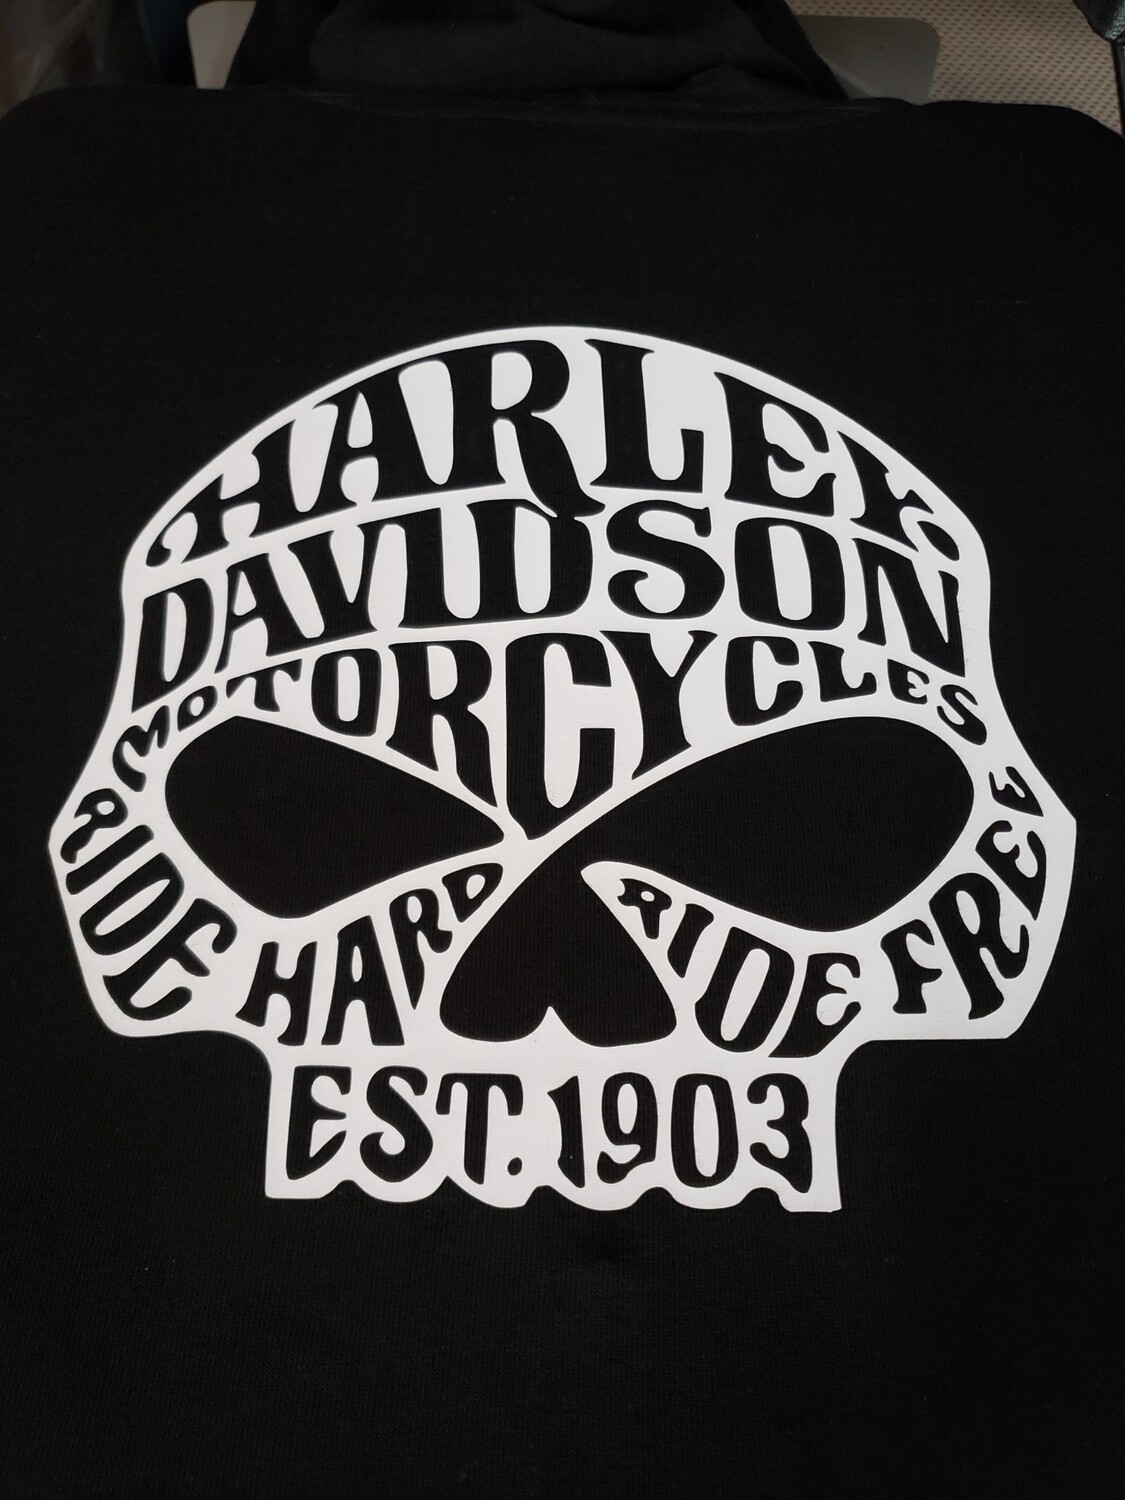 Harley Davidson willy G skull t shirt